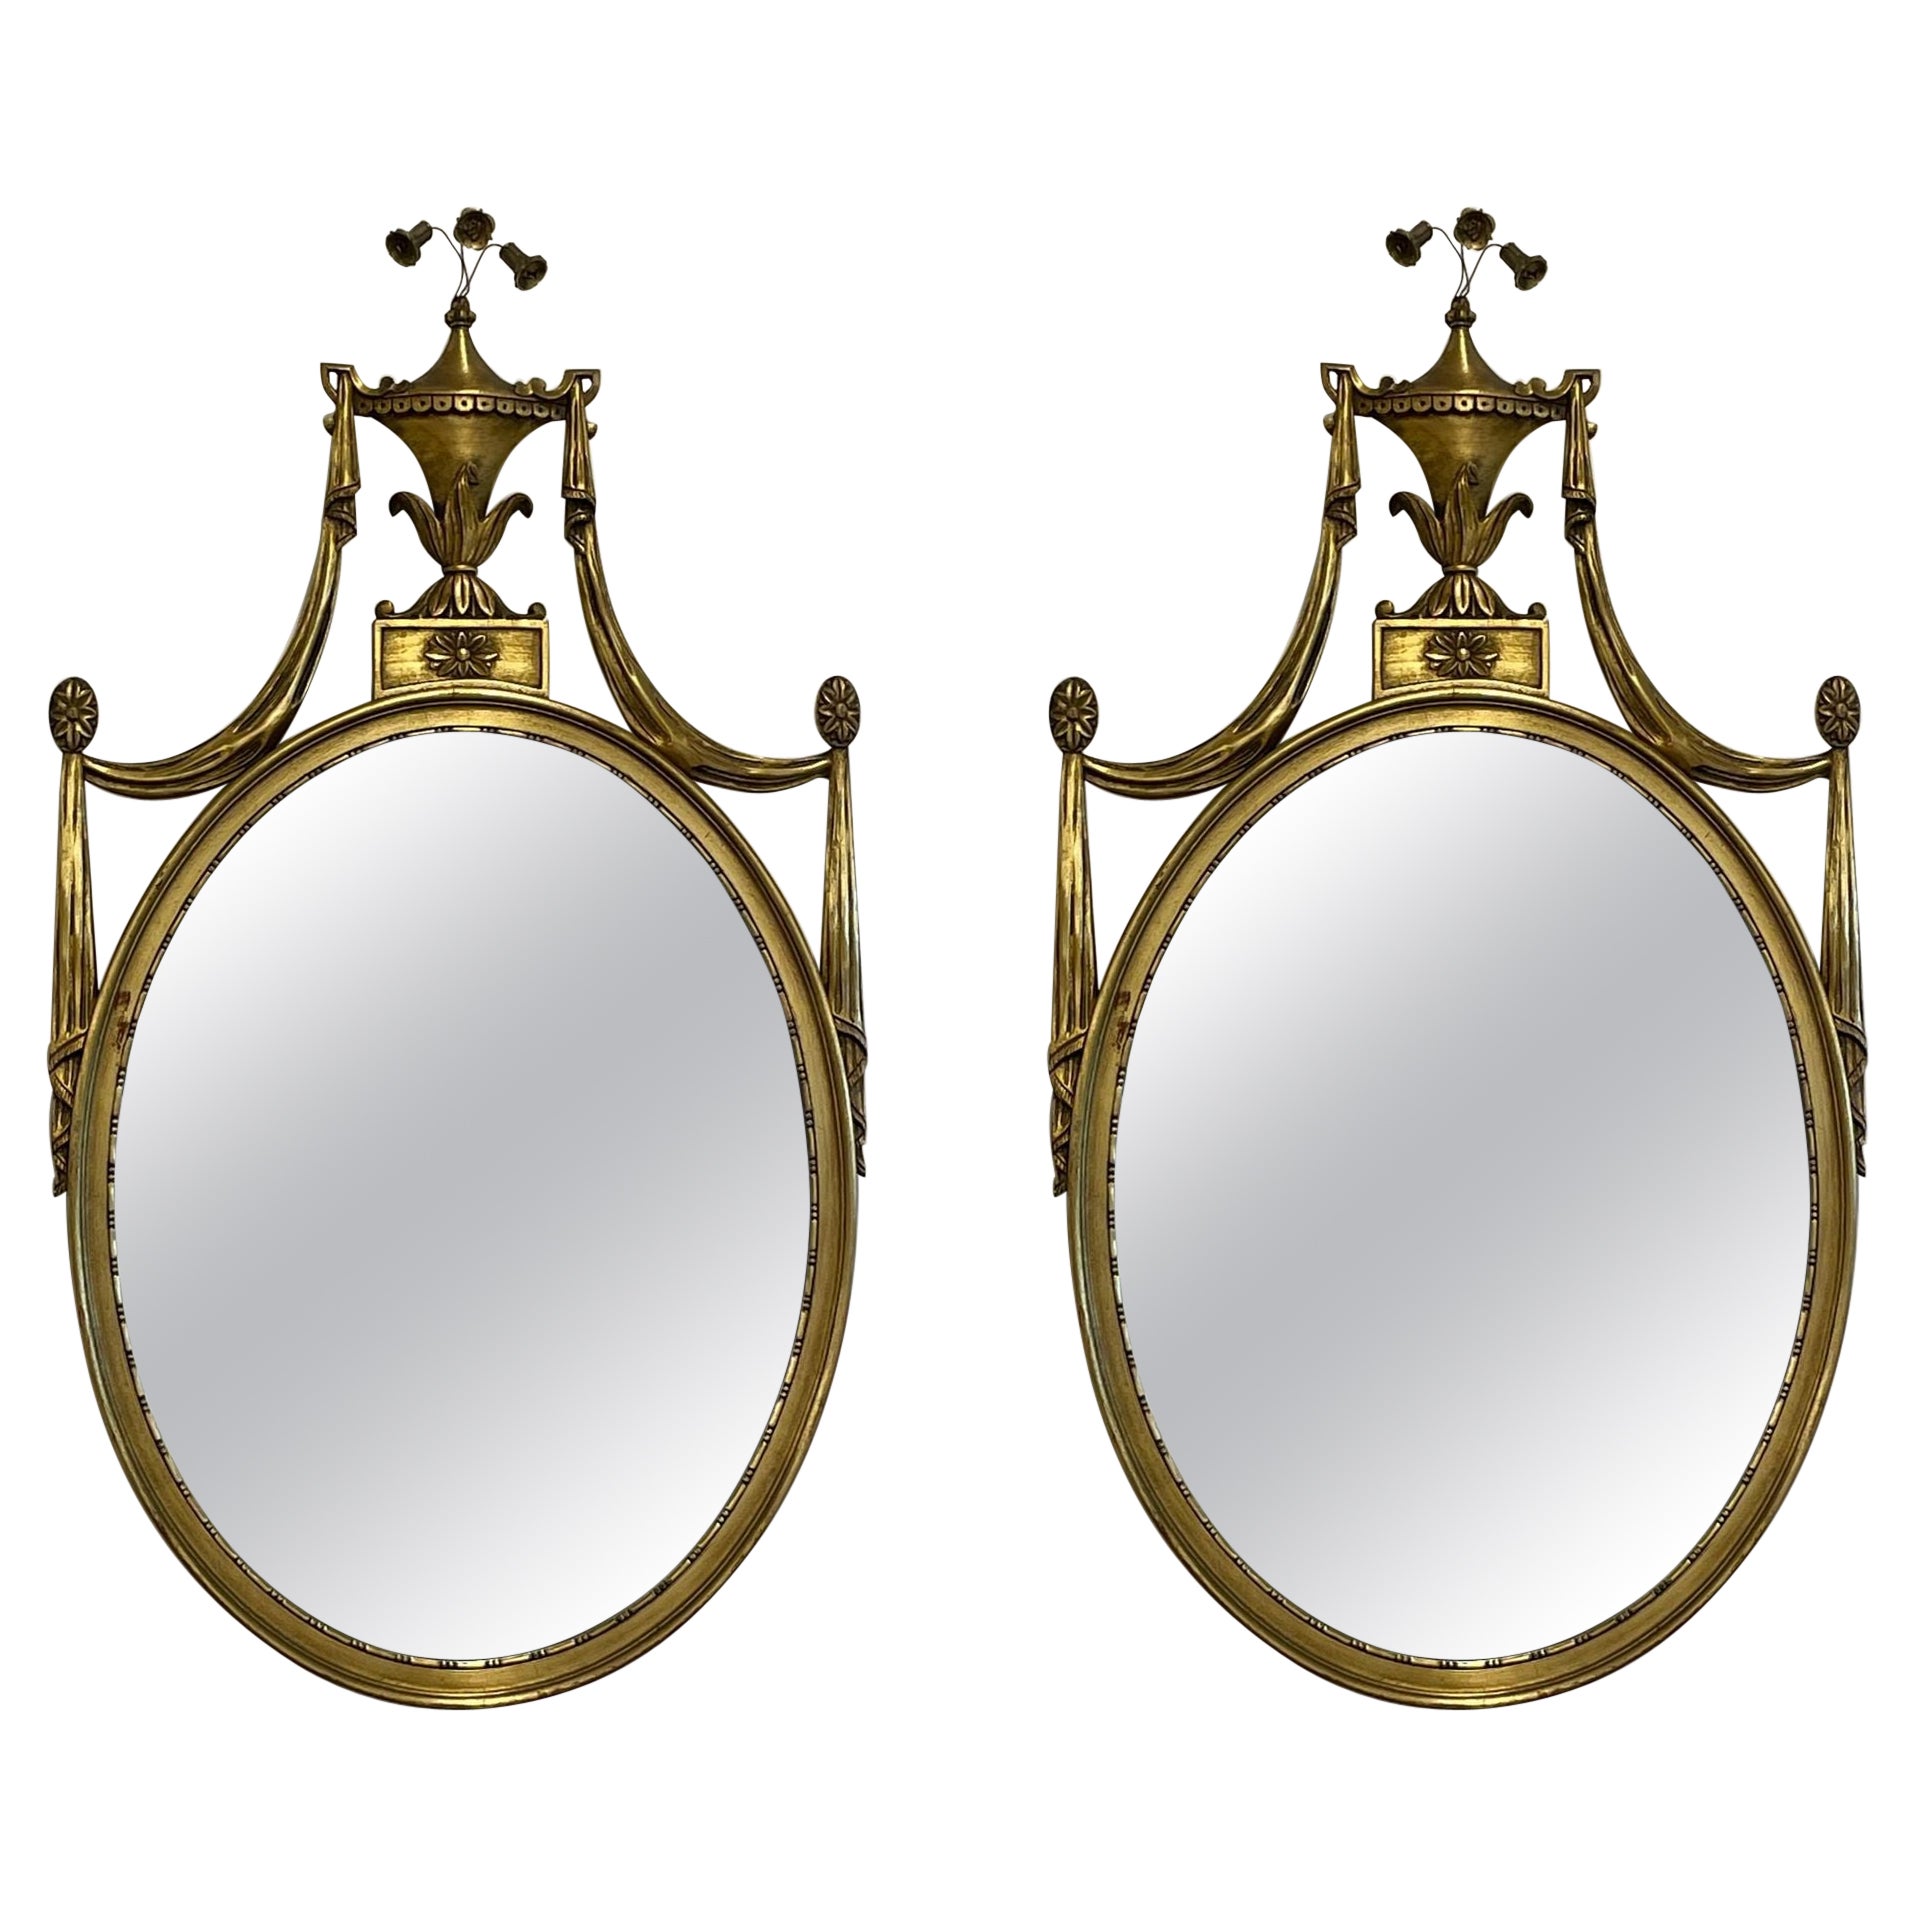 Paire de miroirs muraux en bois doré de style Adams, miroirs-consoles ou miroirs-commodes